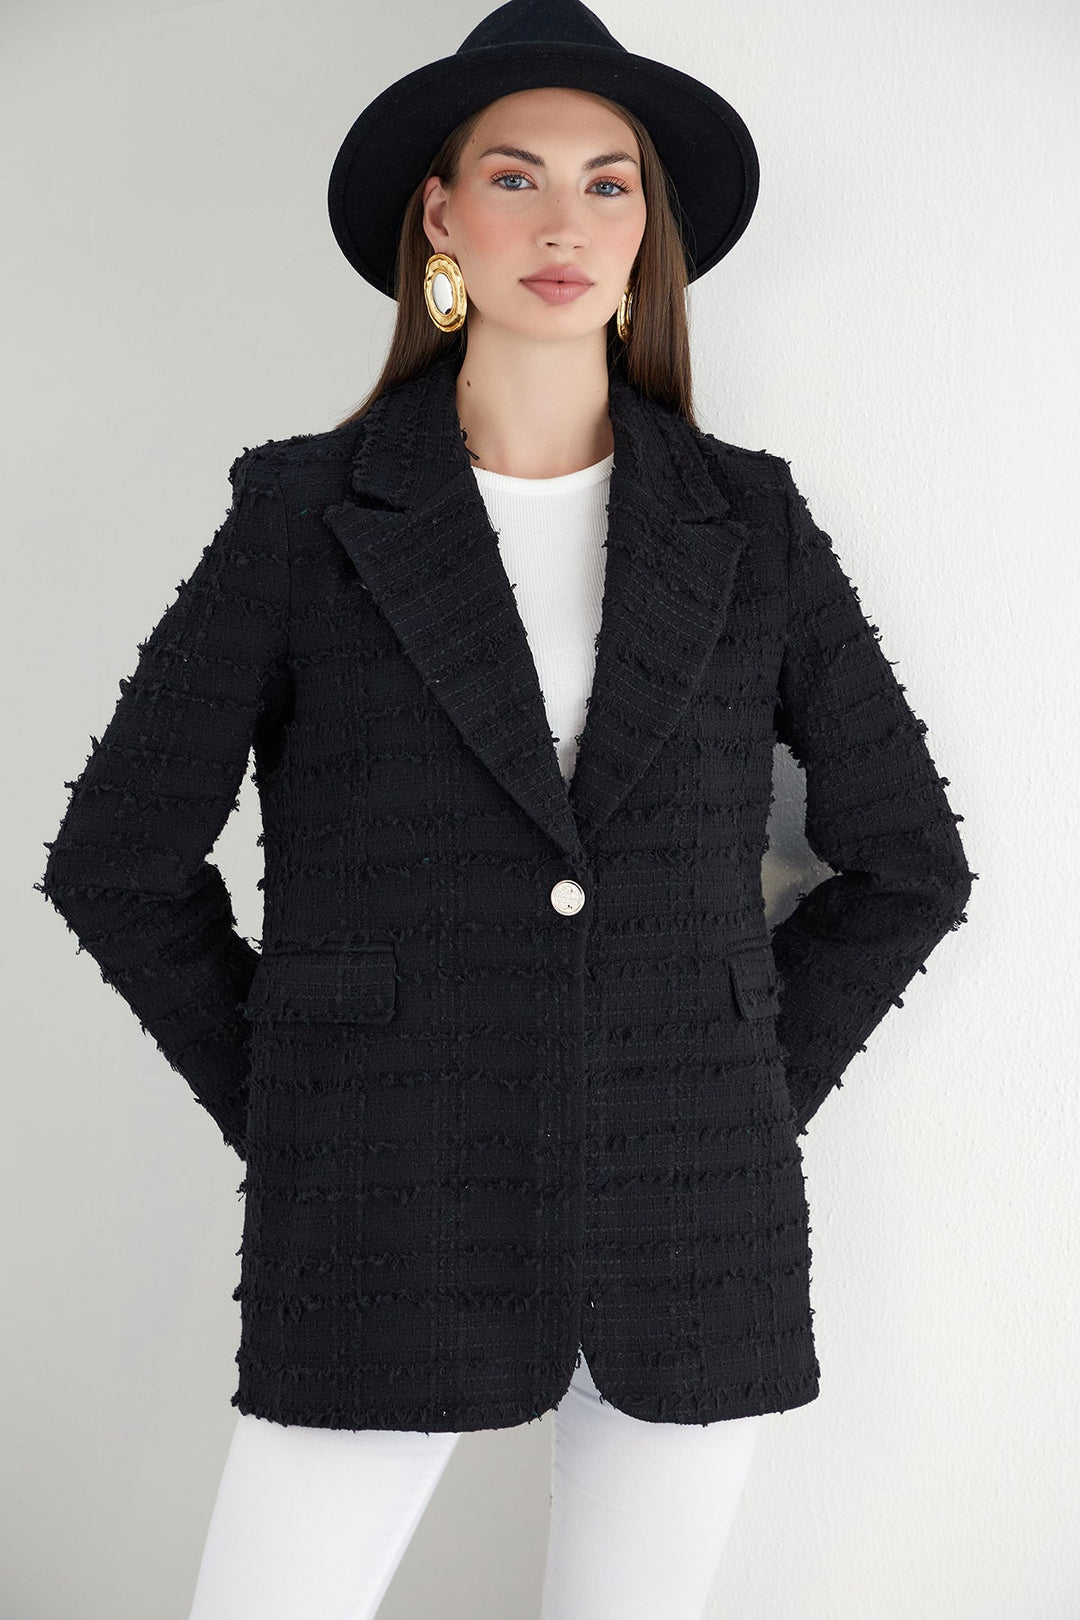 Black Textured Tweed Blazer with 1 Button